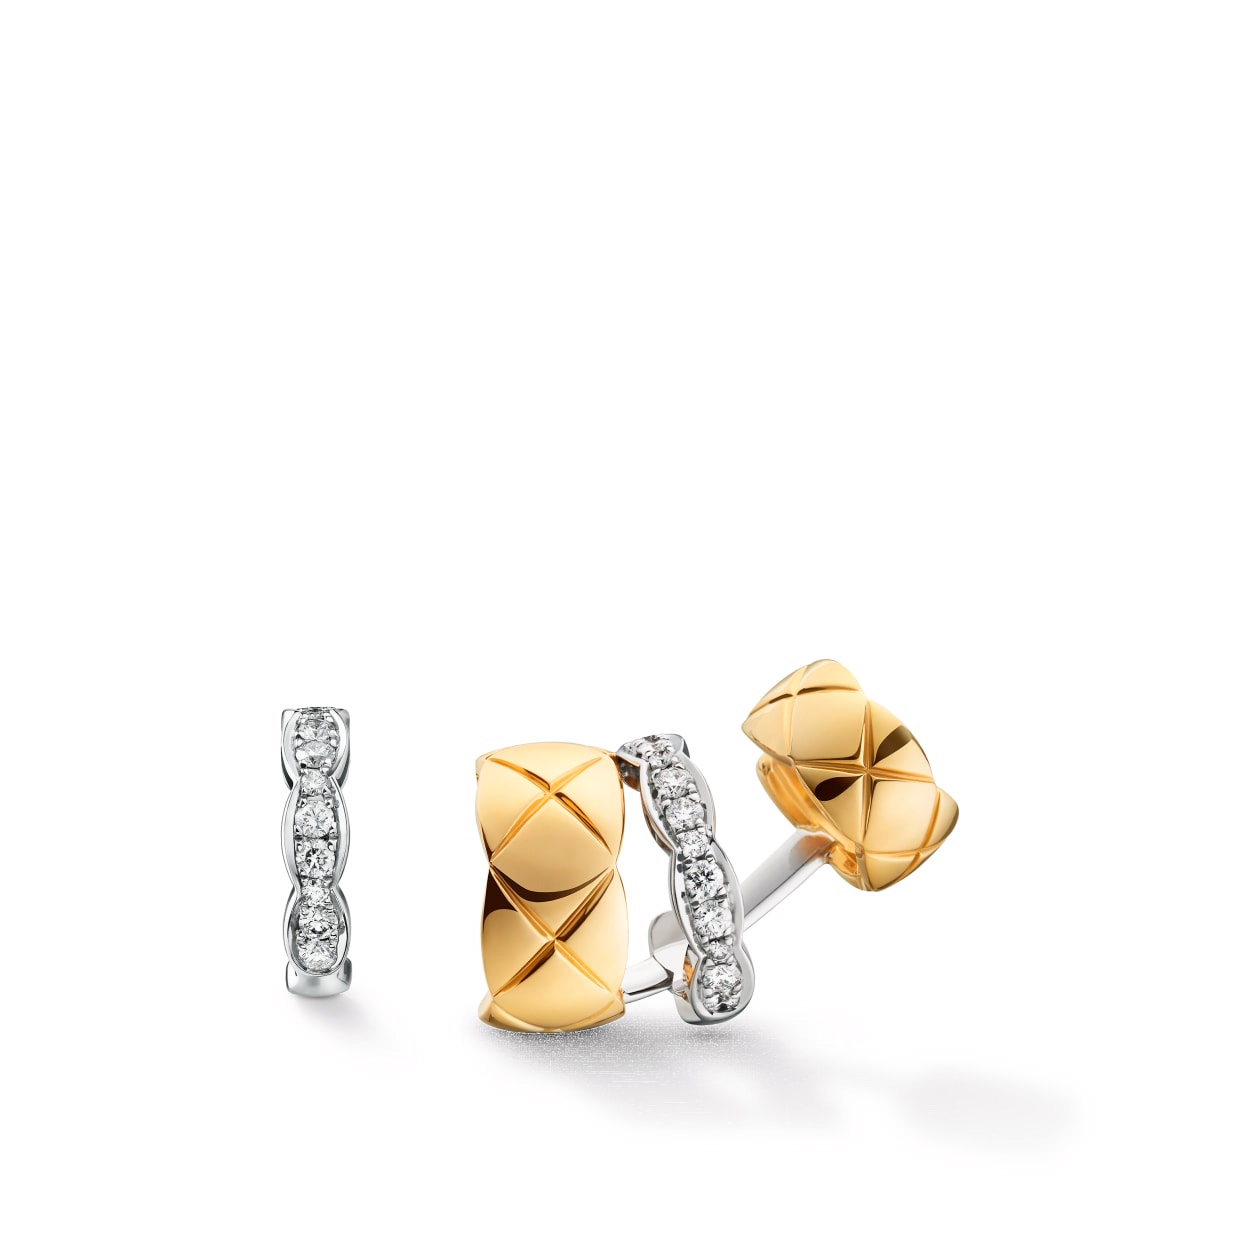 brugerdefinerede sterling sølv øreringe i 18K hvid og OEM/ODM smykker gult guld